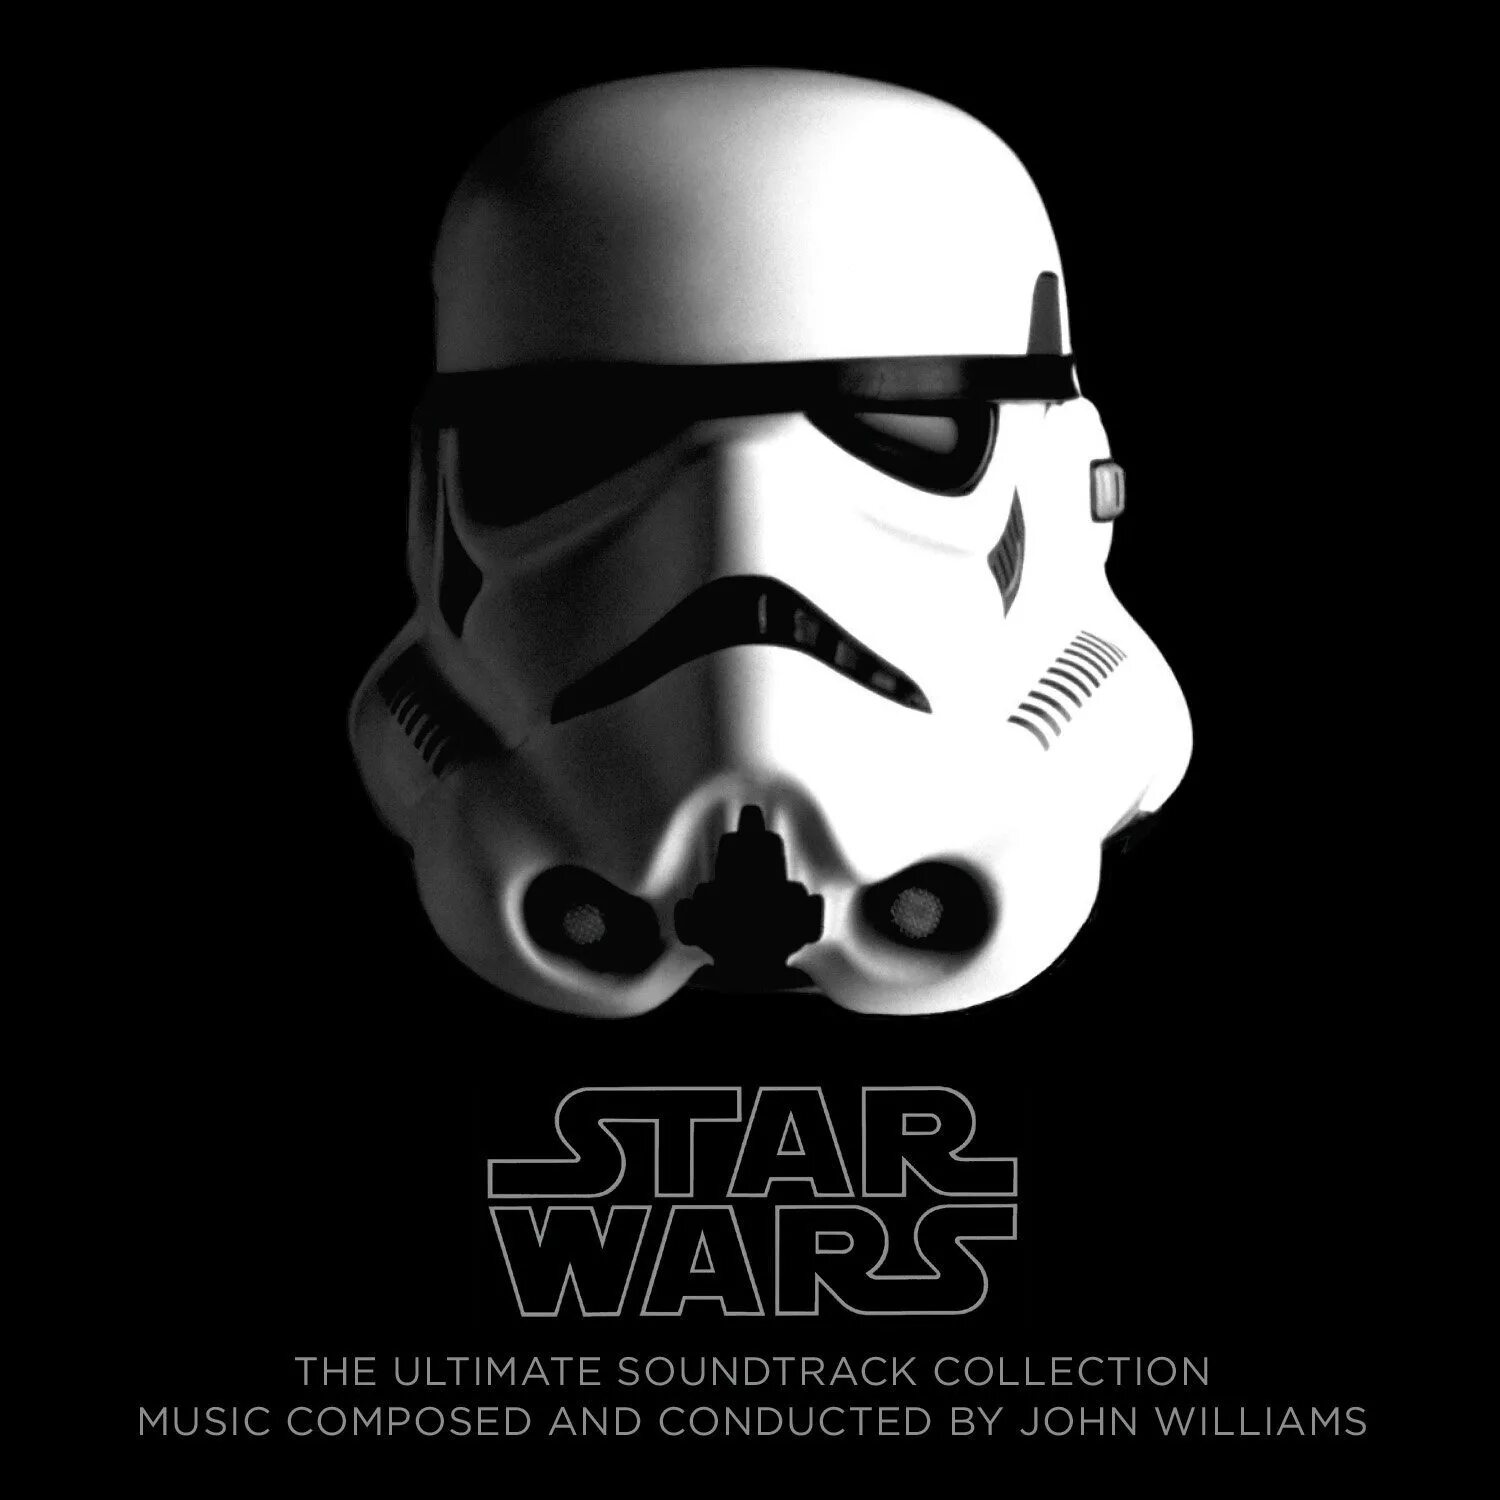 Купить star wars collection. Альбом Звездные войны. Джон Уильямс Звездные войны. Star Wars Soundtrack. Звездные войны cd10.